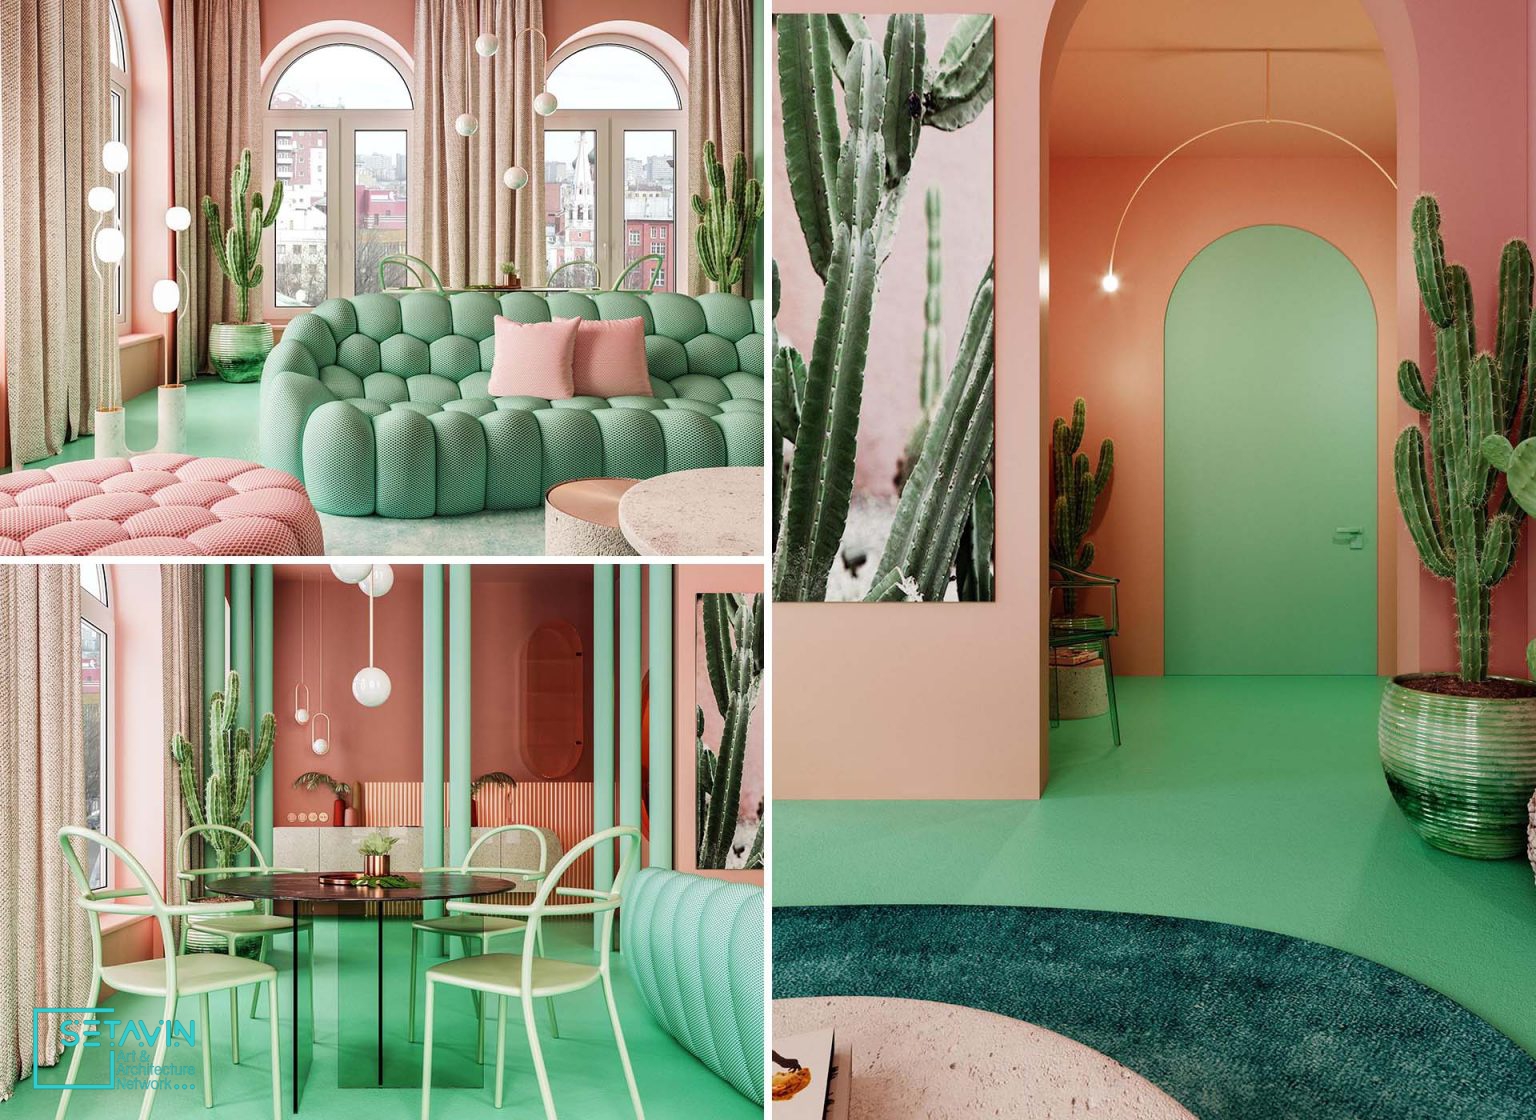 طراحی داخلی آپارتمانی در نیویورک با ترکیب رنگی صورتی پاستلی و سبز نعنایی